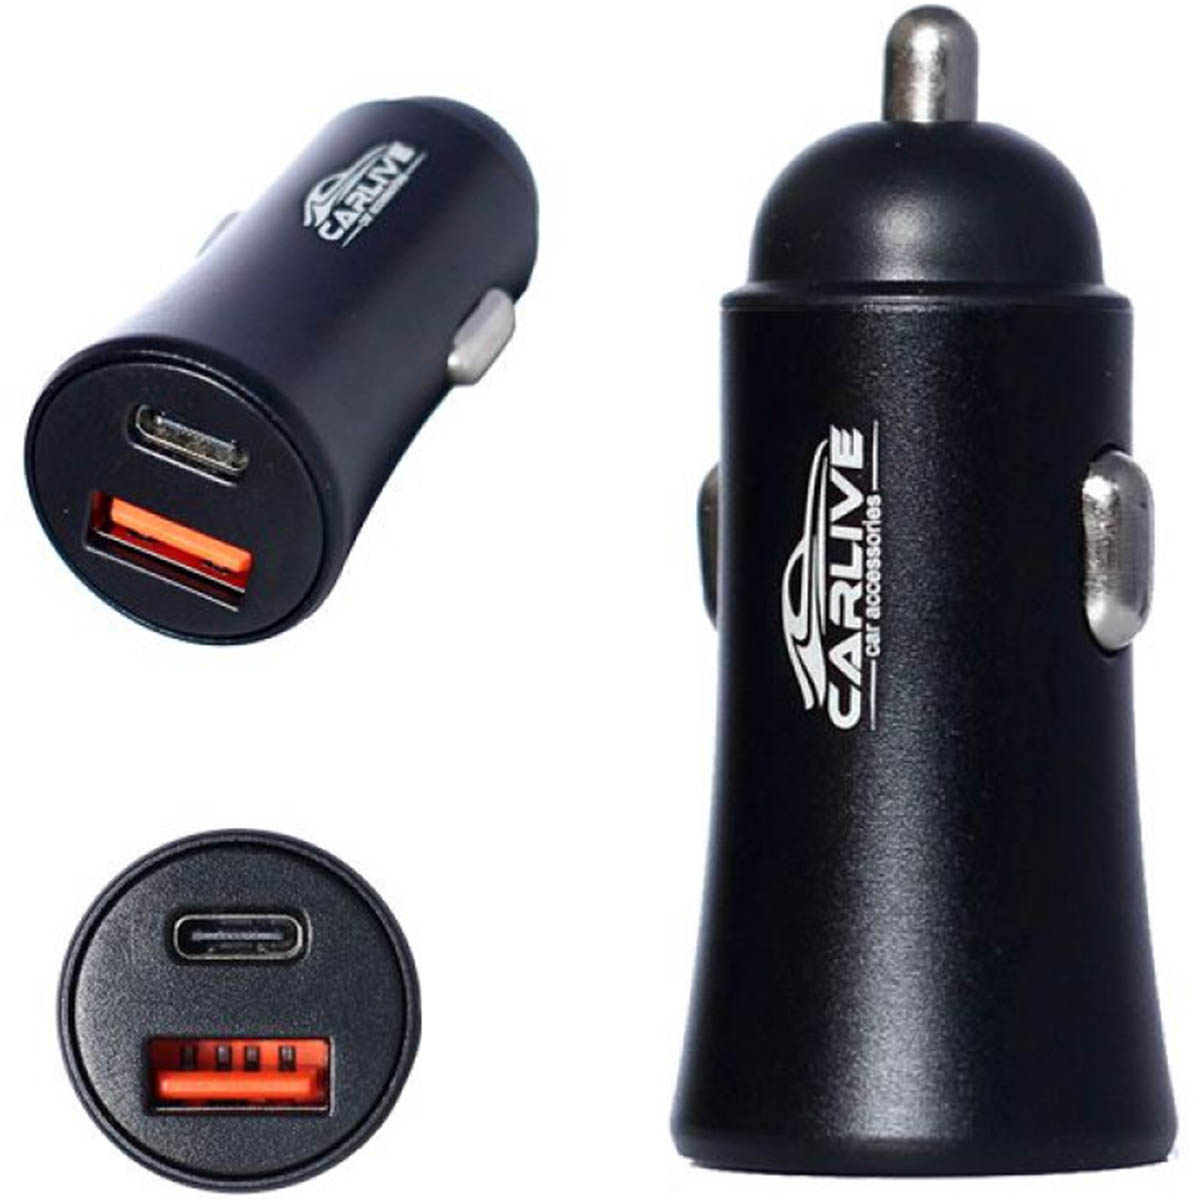 АЗУ (Автомобильное зарядное устройство) CARLIVE MR67, 1 USB QC 3.0, 1 Type-C, цвет черный